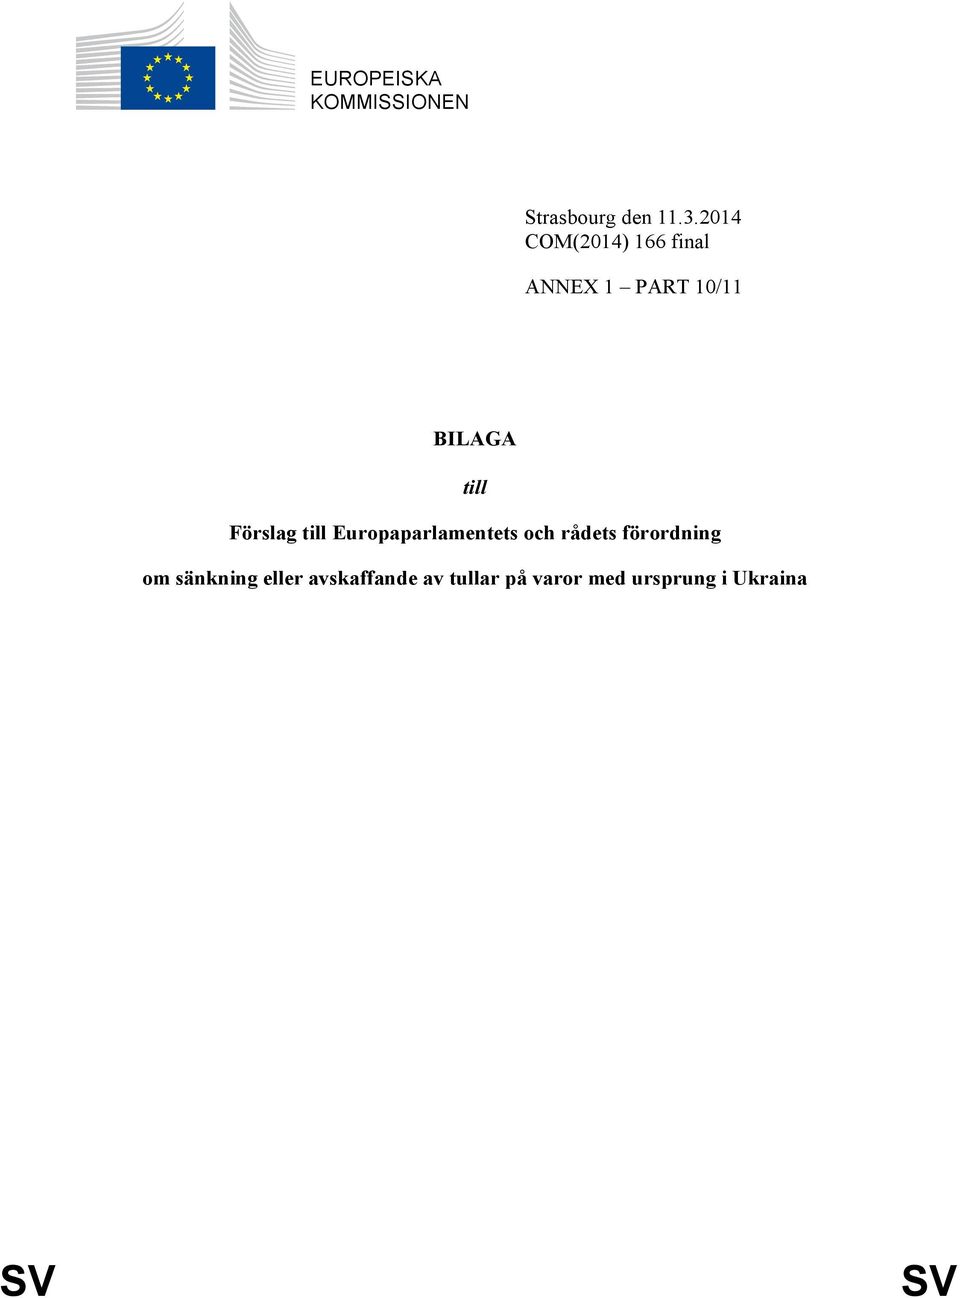 Förslag till Europaparlamentets och rådets förordning om